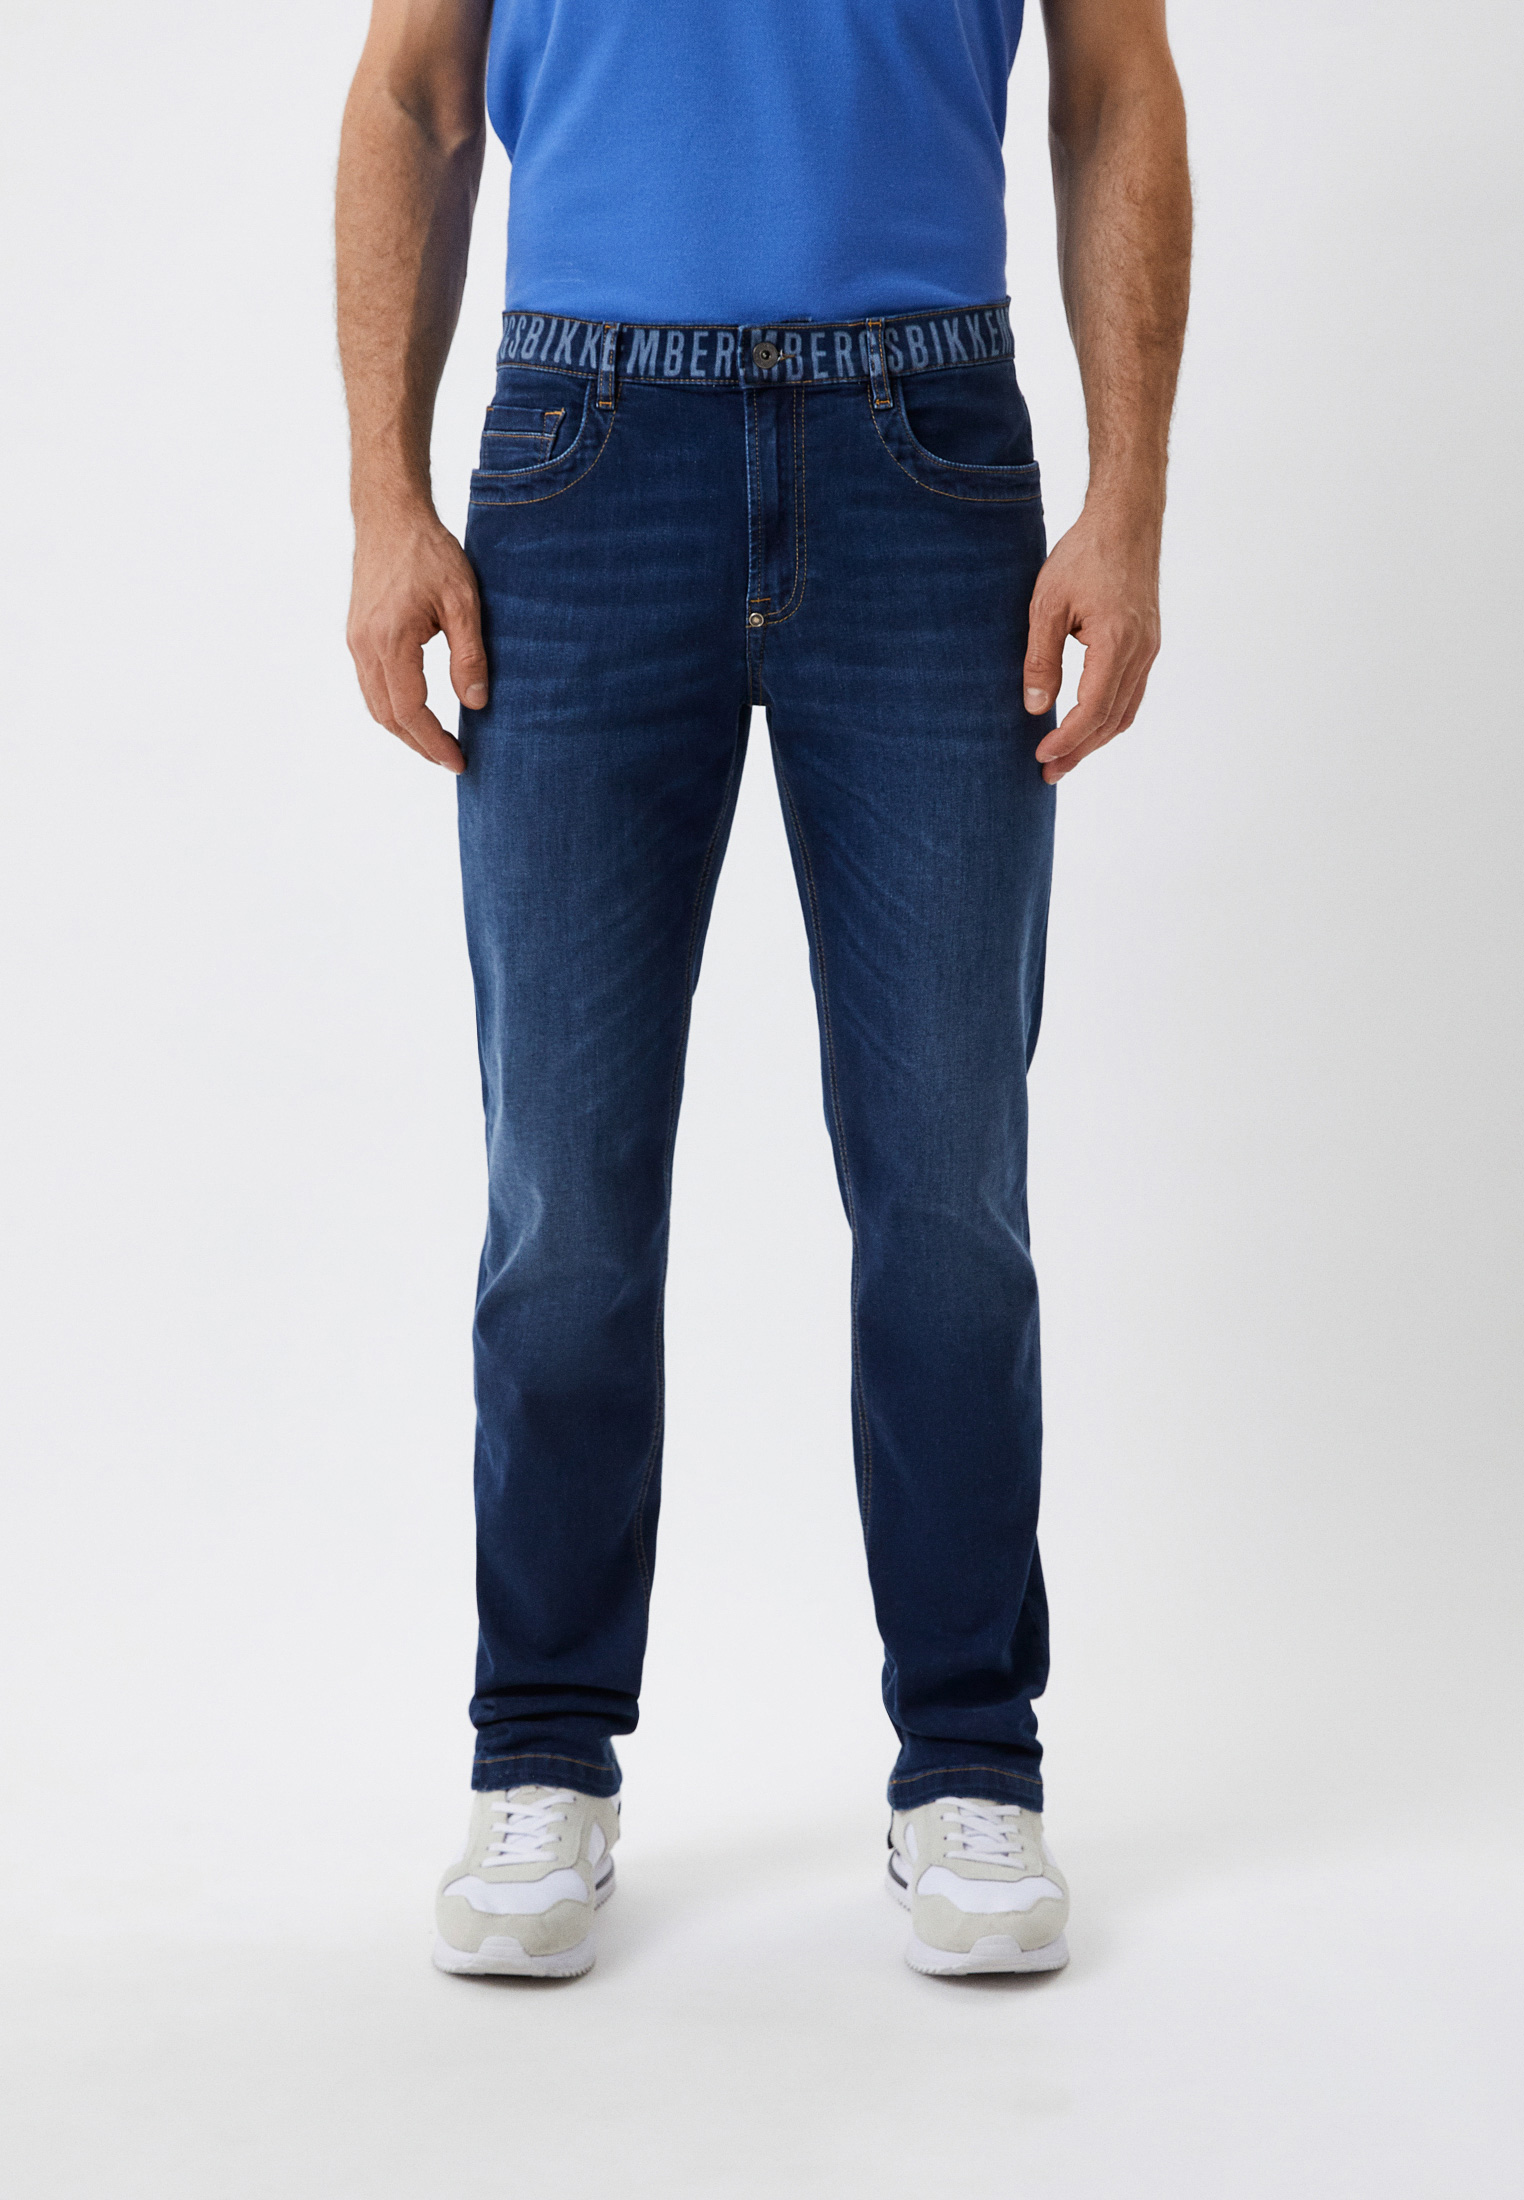 Мужские прямые джинсы Bikkembergs (Биккембергс) C Q 102 72 S 3511: изображение 1